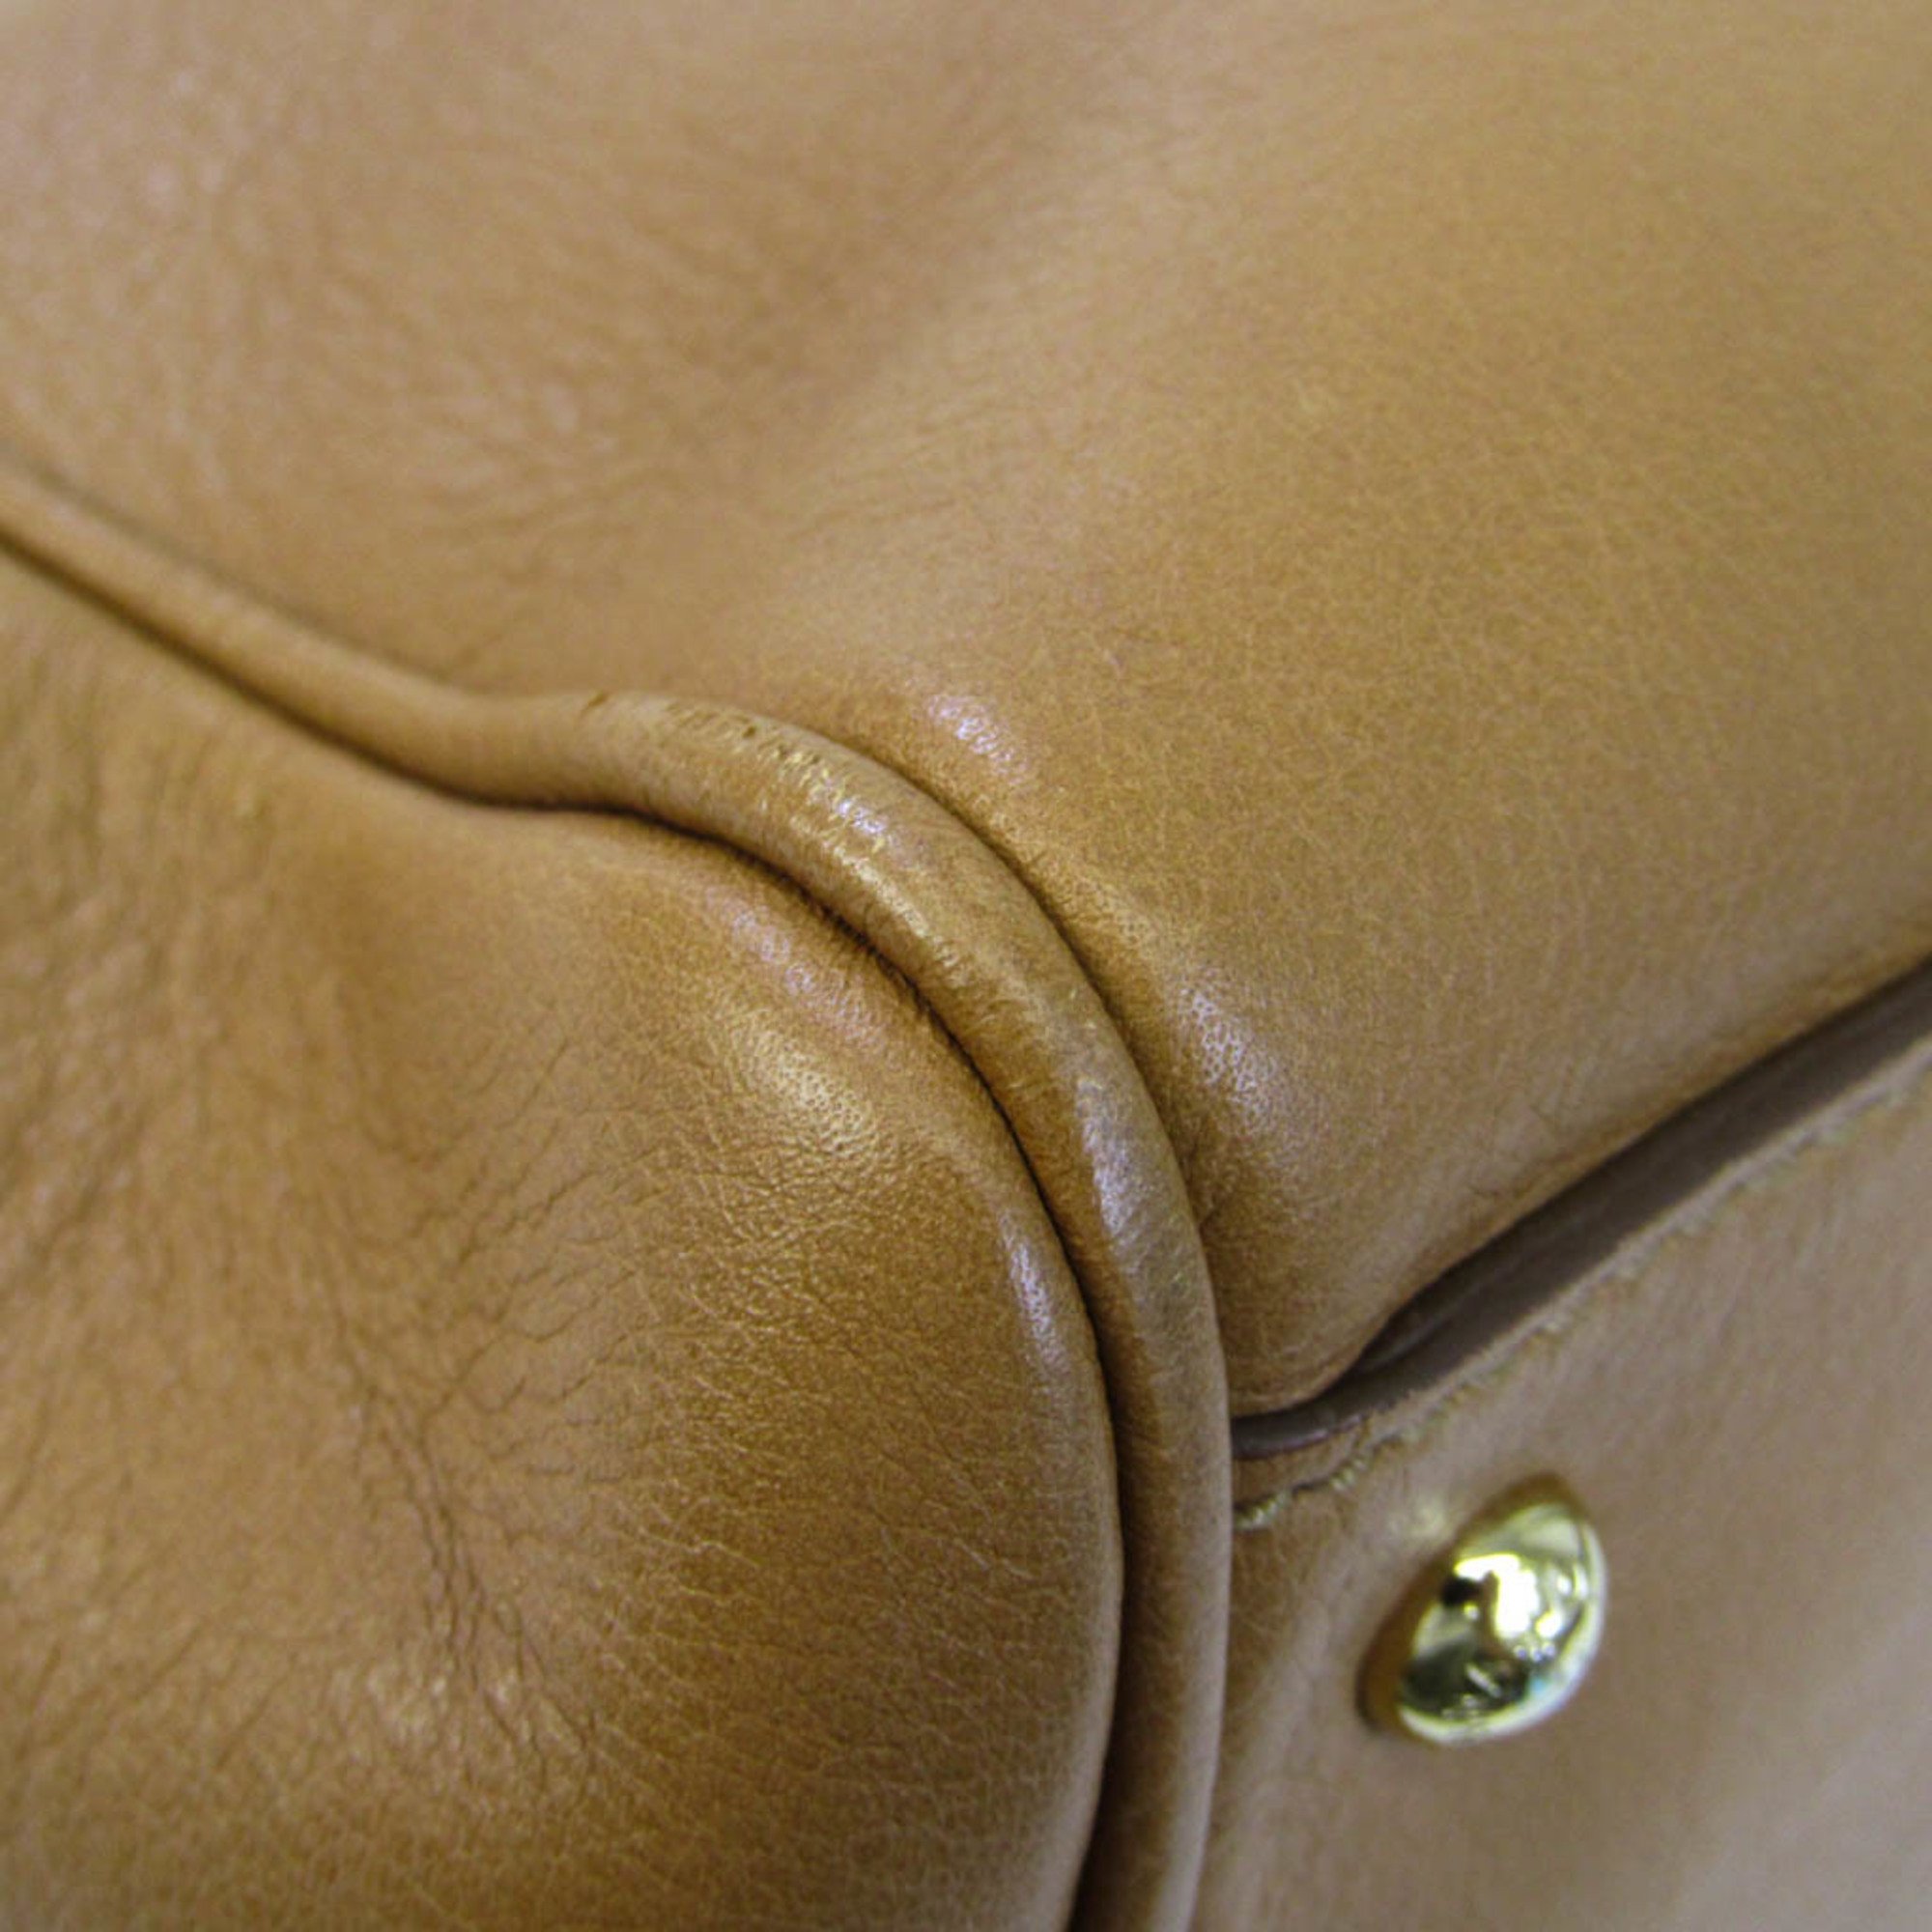 Dolce & Gabbana Women's Leather Handbag,Shoulder Bag Light Brown